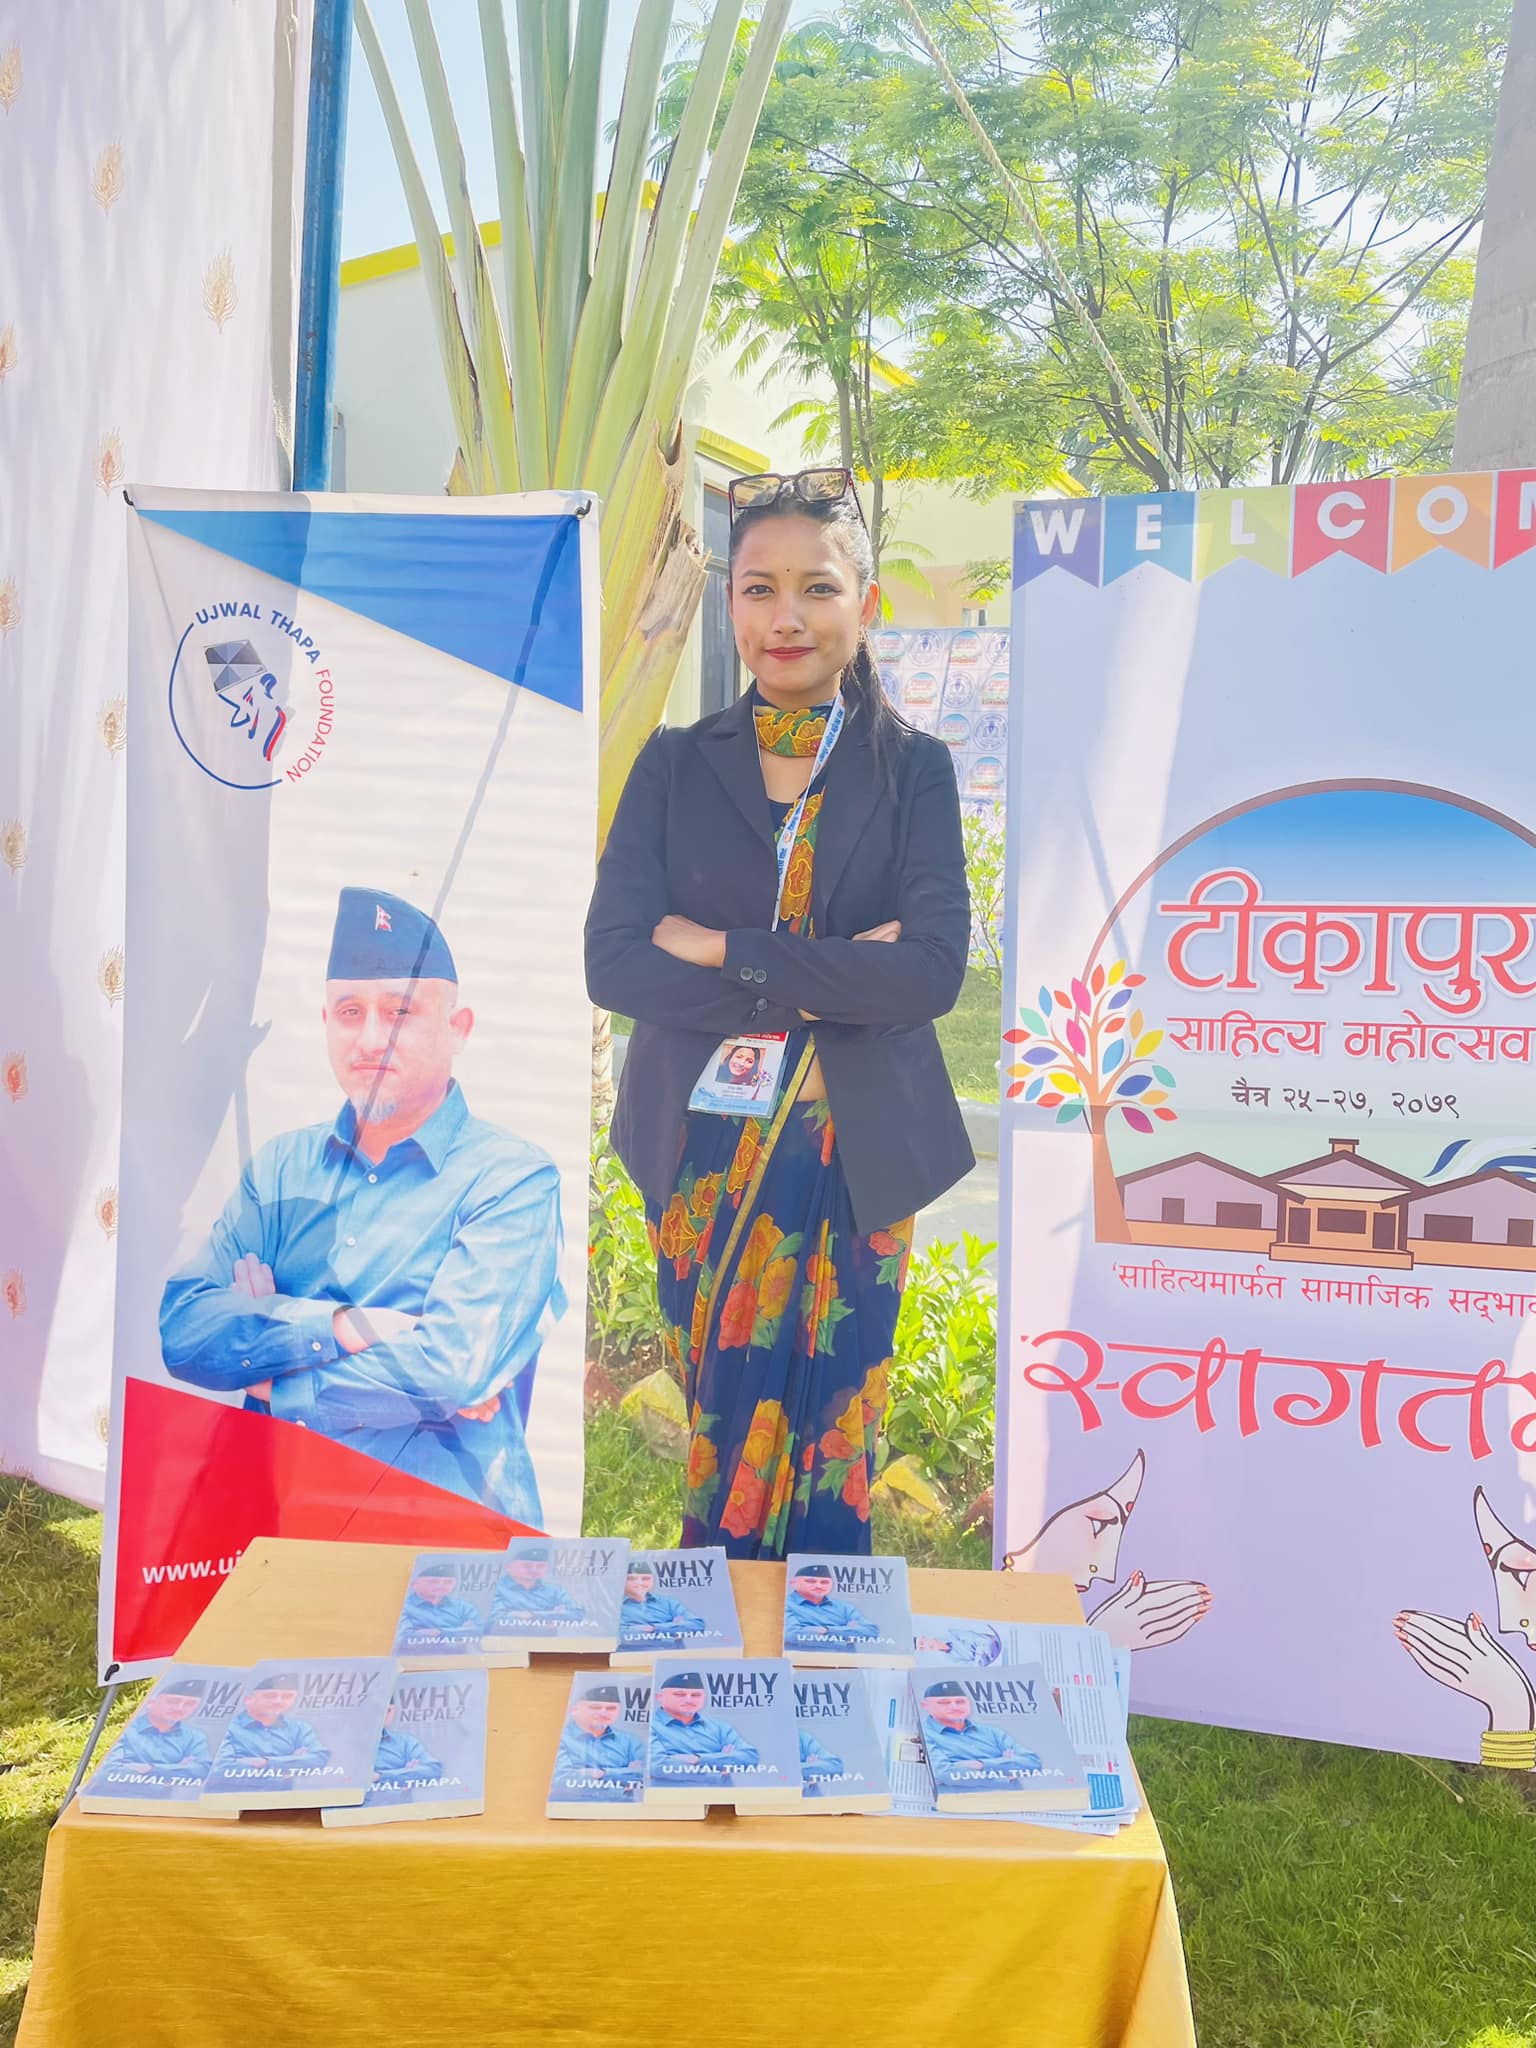 Participated at Tikapur Literature Festival